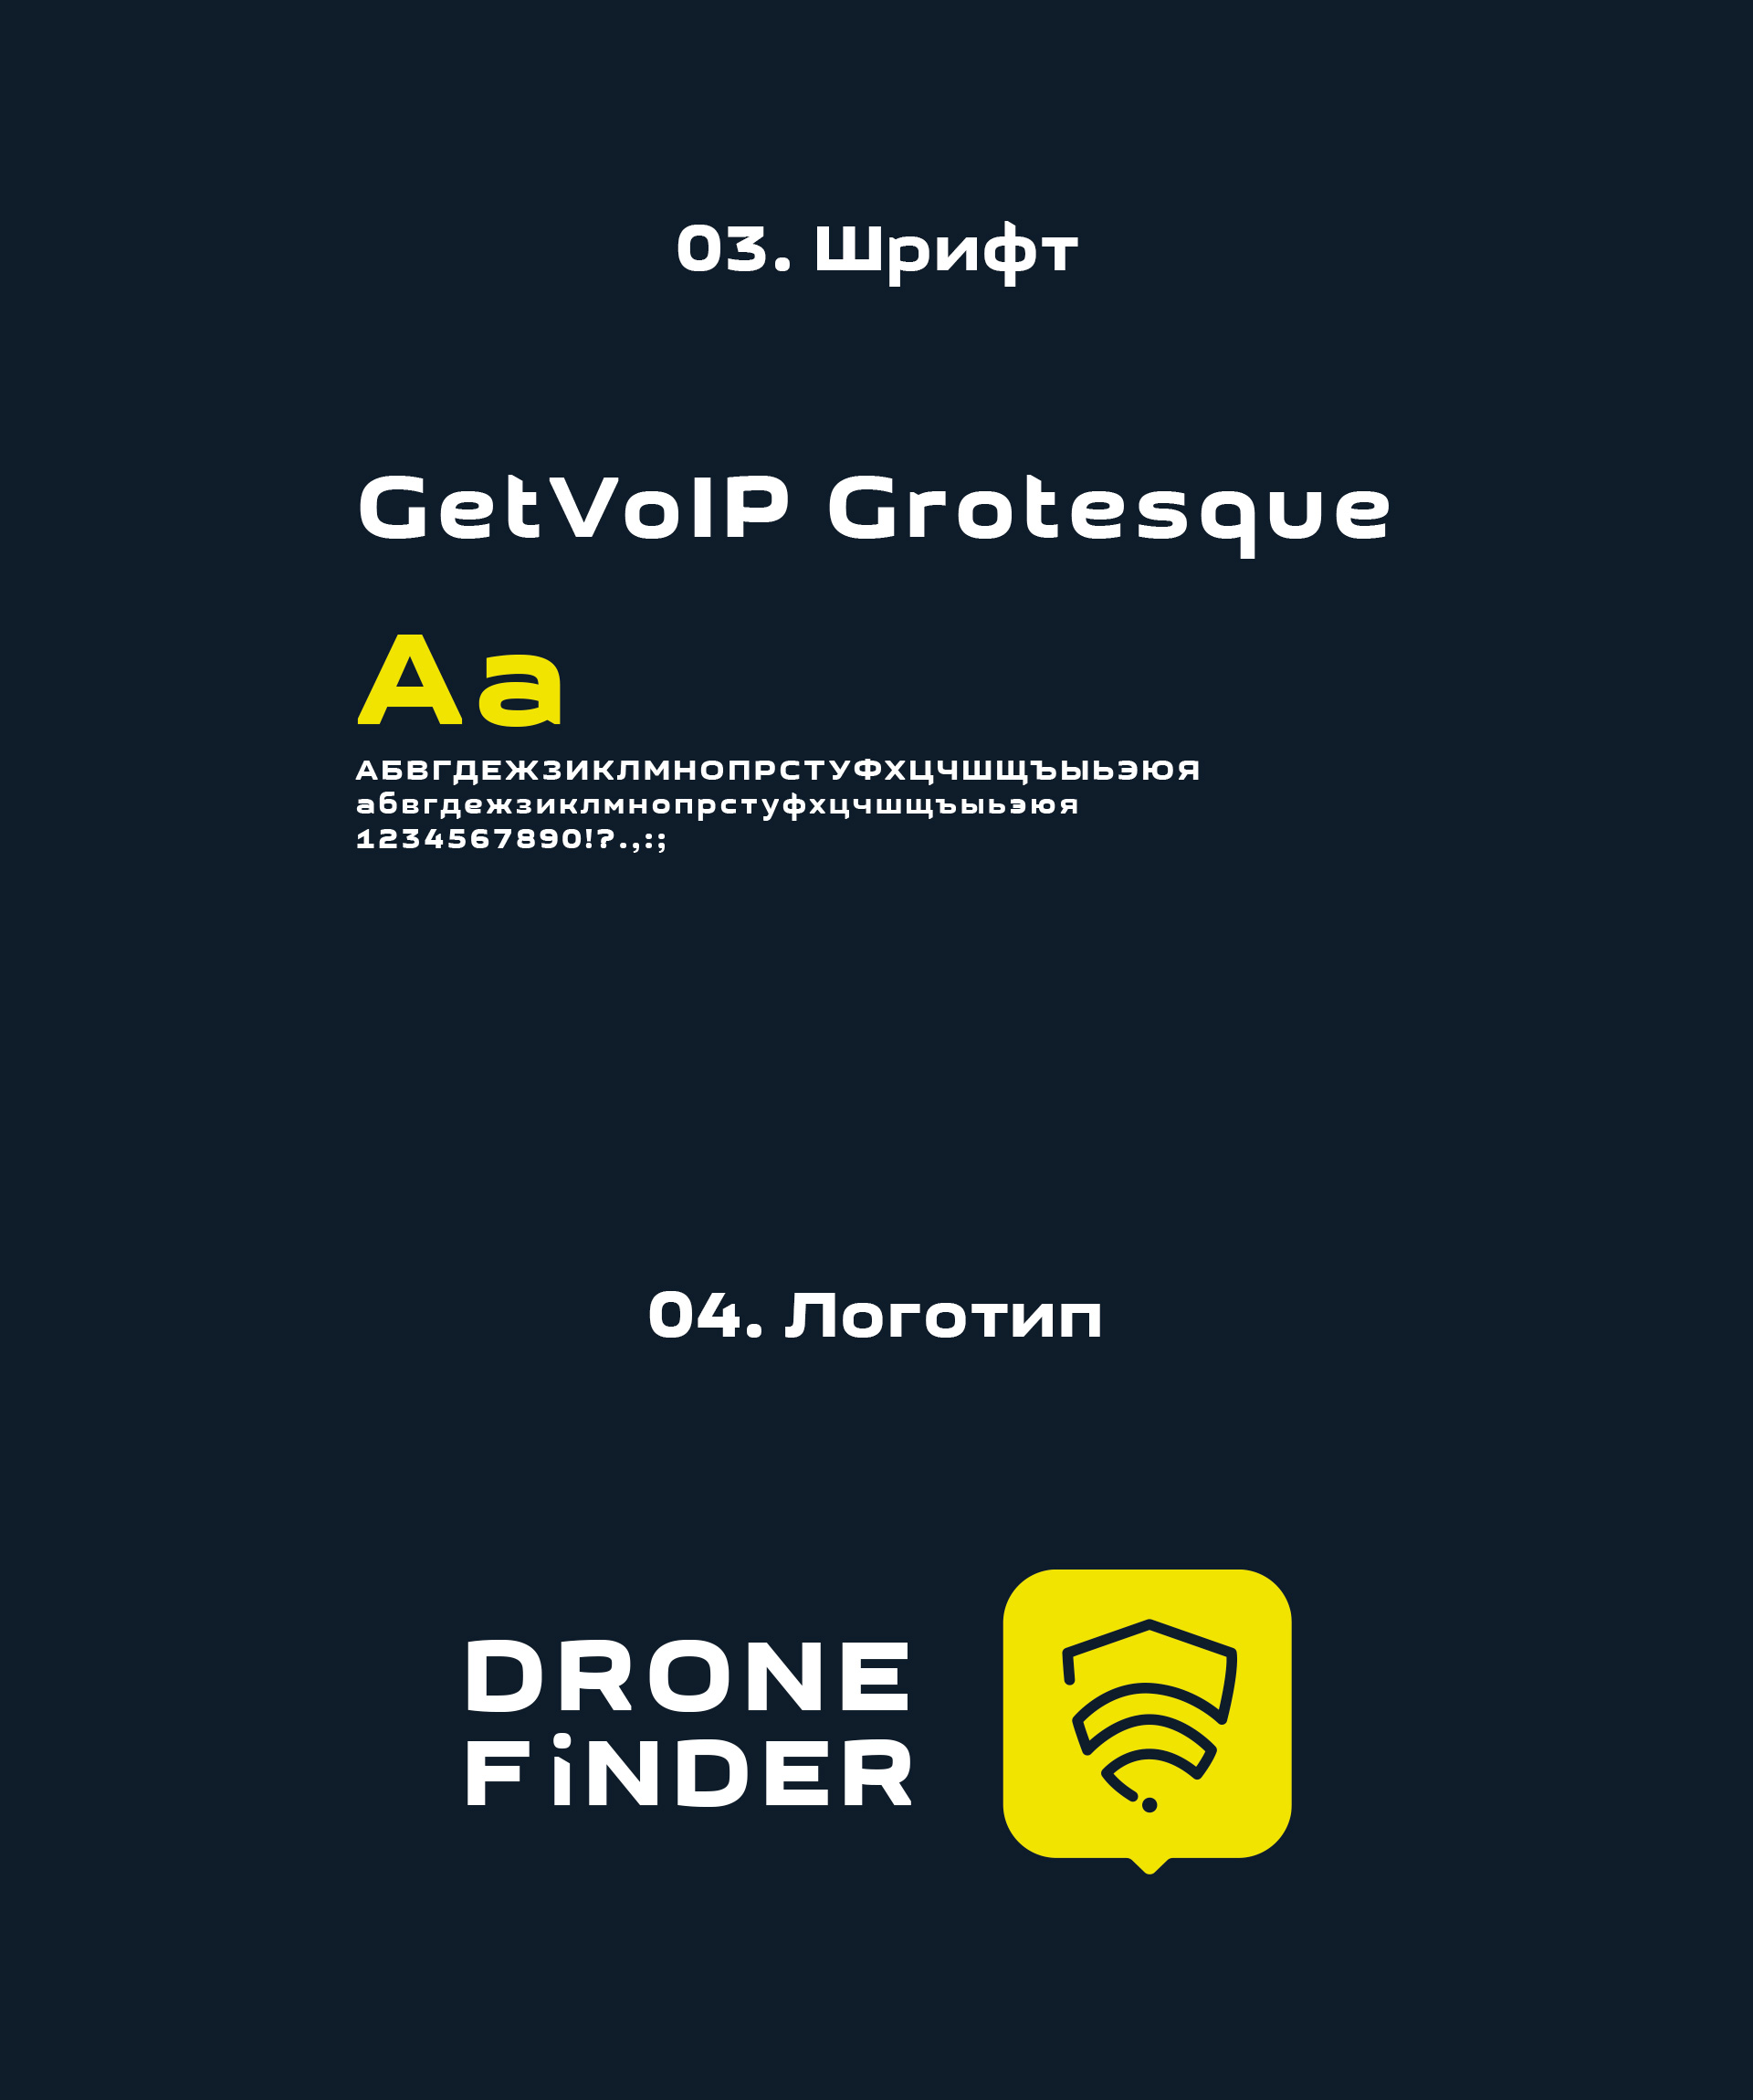 Drone finder фирменные стиль